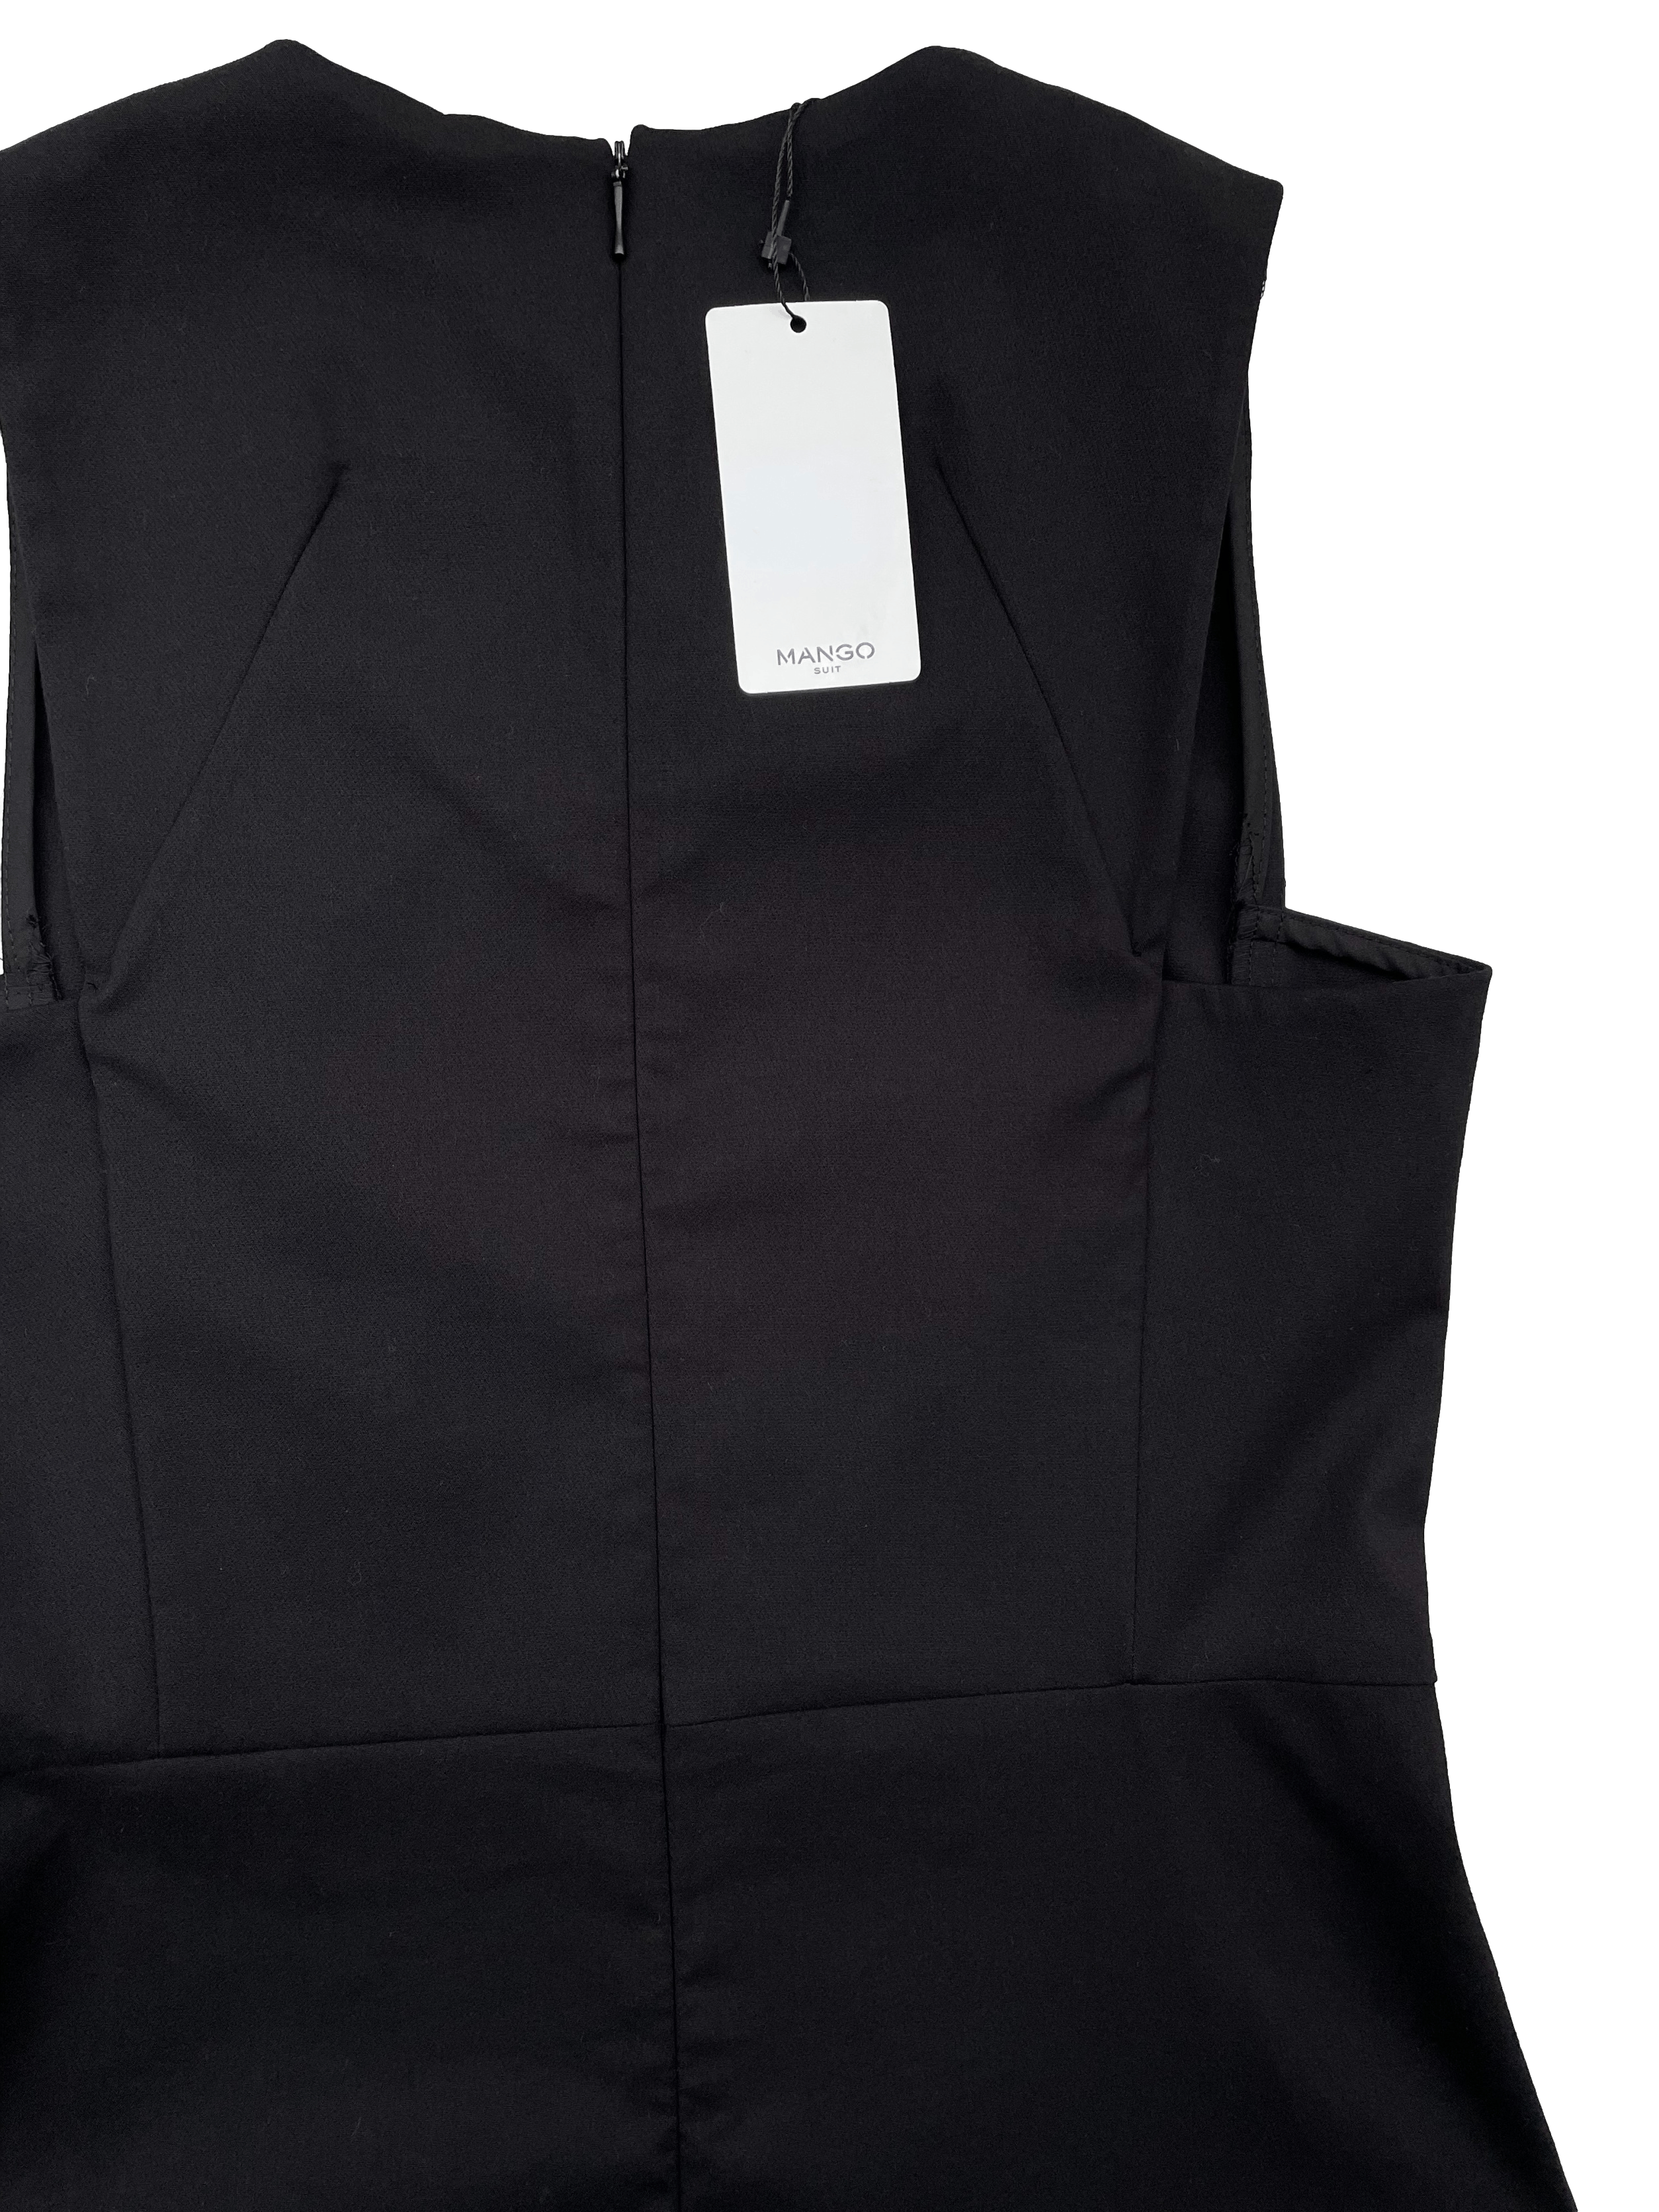 Vestino negro Mango, tela plana, corte en cintura y pinzas en busto, cierre invisible posterior. Nuevo con etiqueta. Busto 88cm, Largo 86cm.